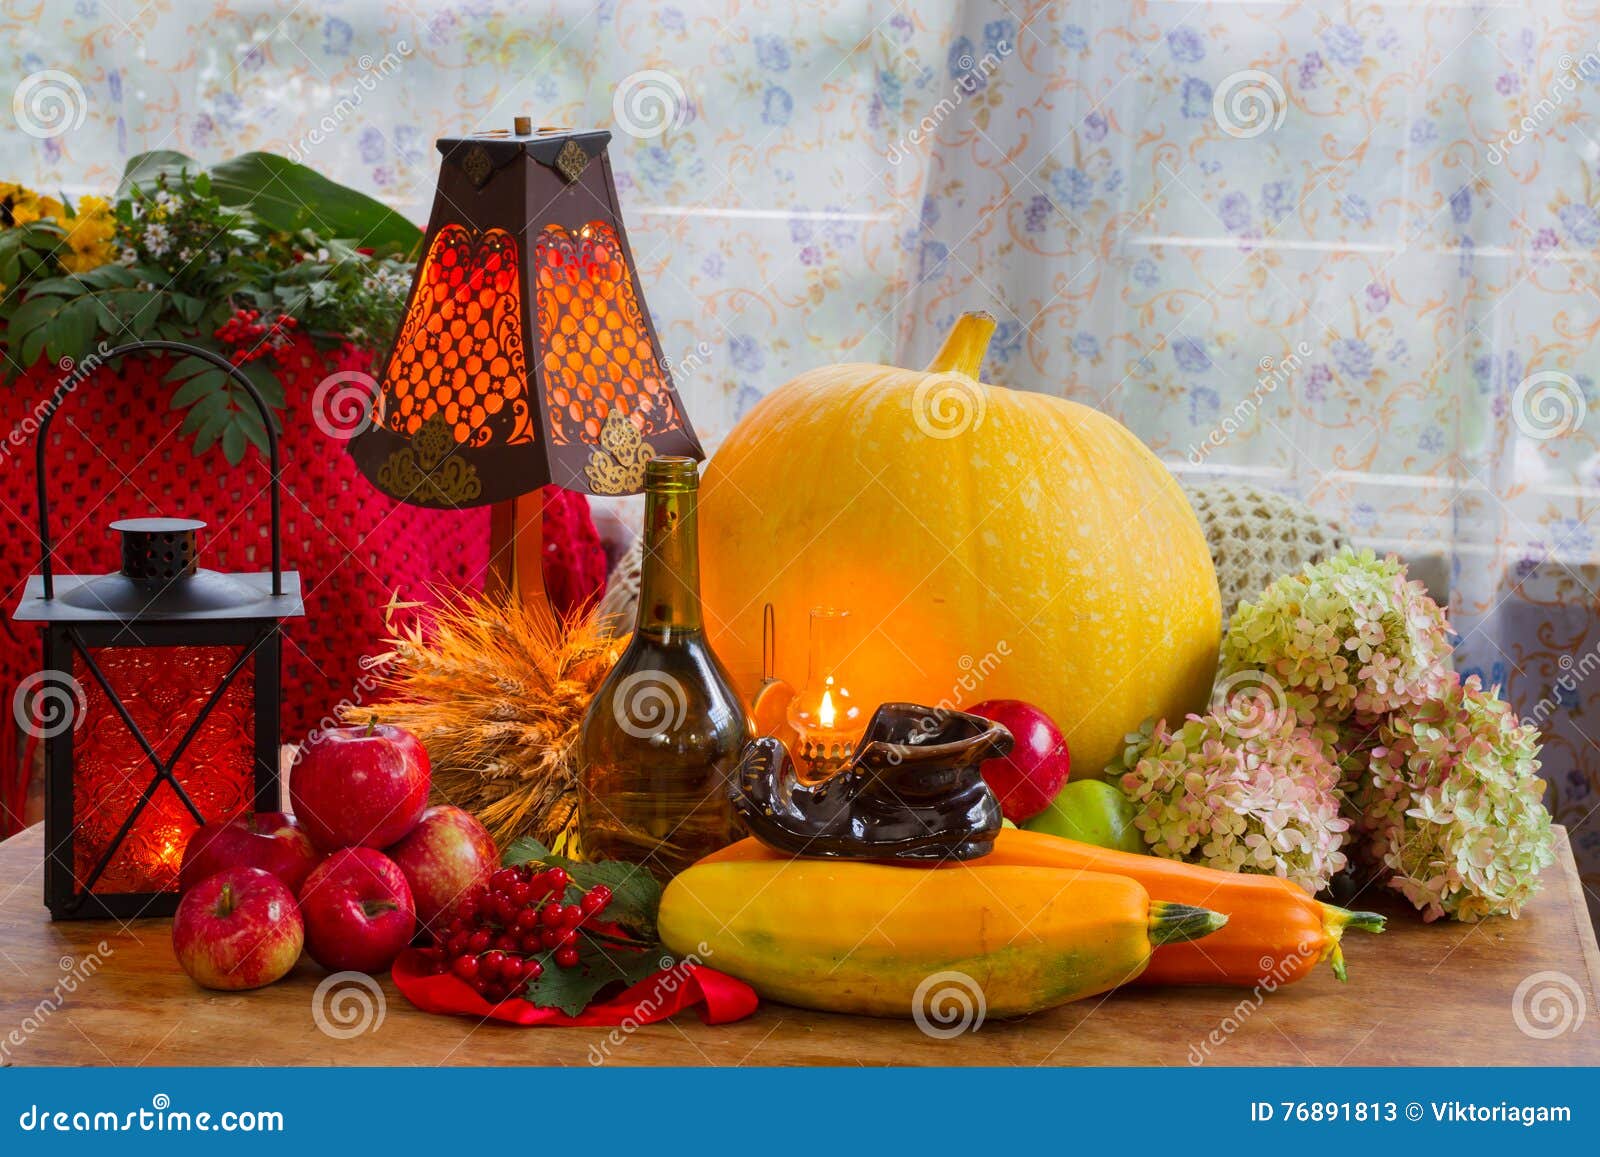 Ação de graças - um feriado da família, ainda vida com vegetais e frutos do outono, vintage A foto ensolarada e confortável em casa, agradece ao deus